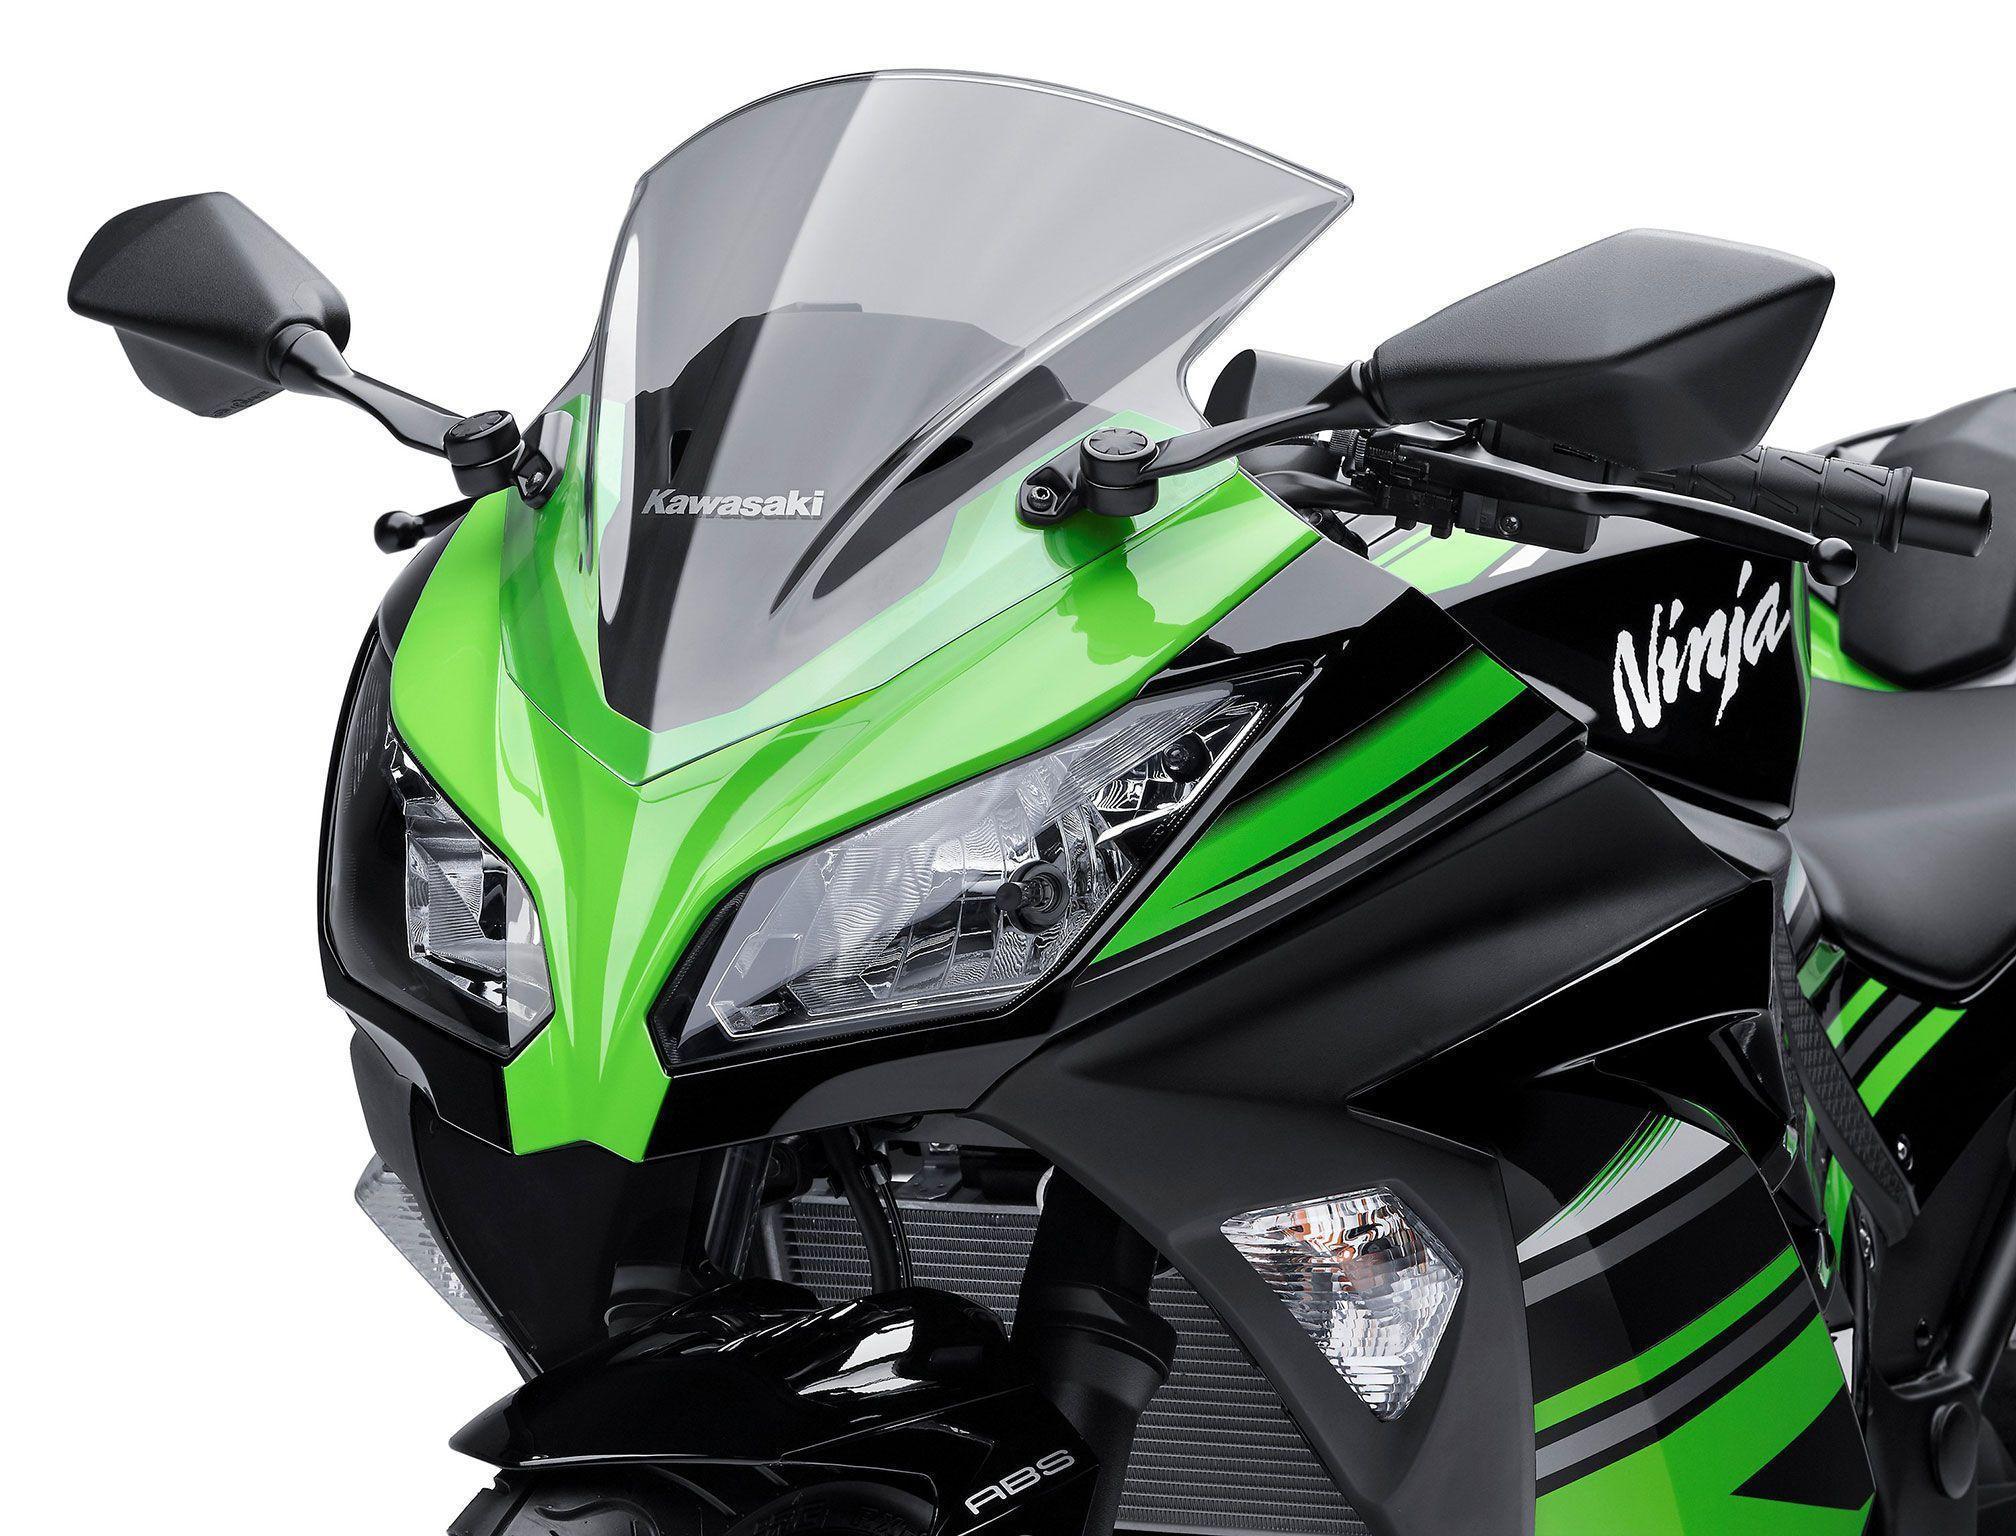 Kawasaki Ninja 300 ABS KRT Edition Review